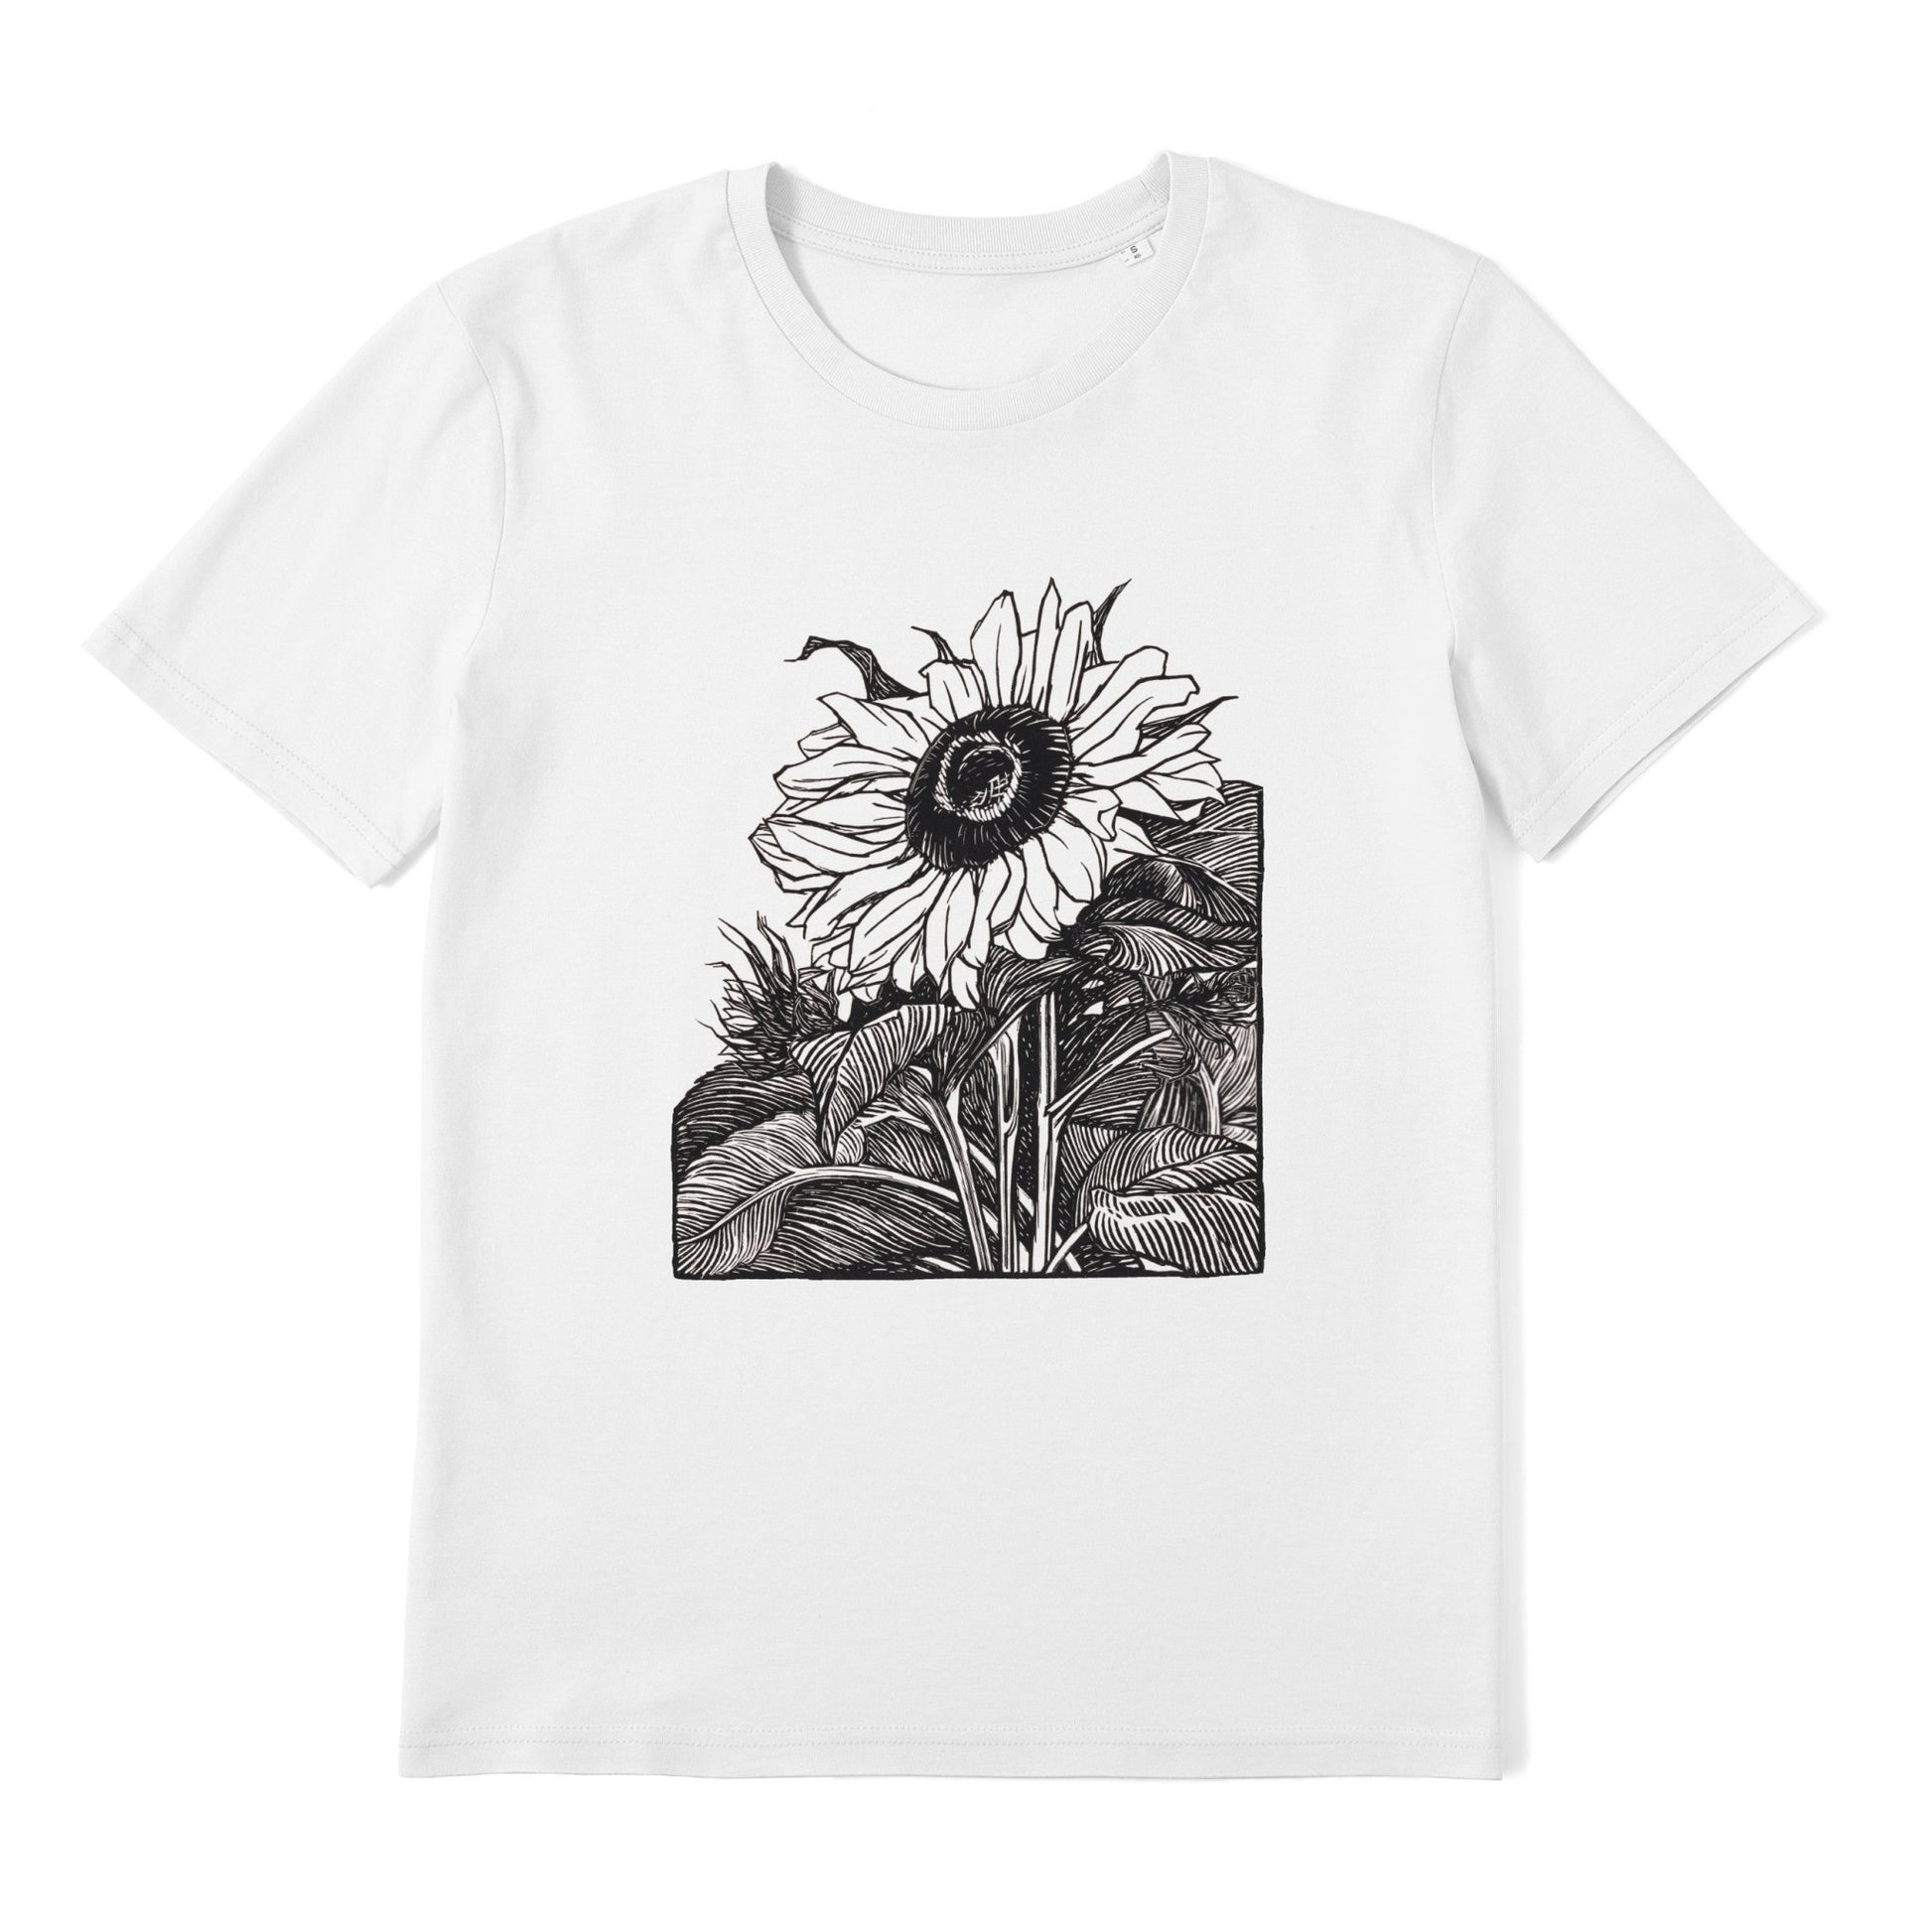 JULIE DE GRAAG - Sunflower T-Shirt - Pathos Studio - Shirts & Tops